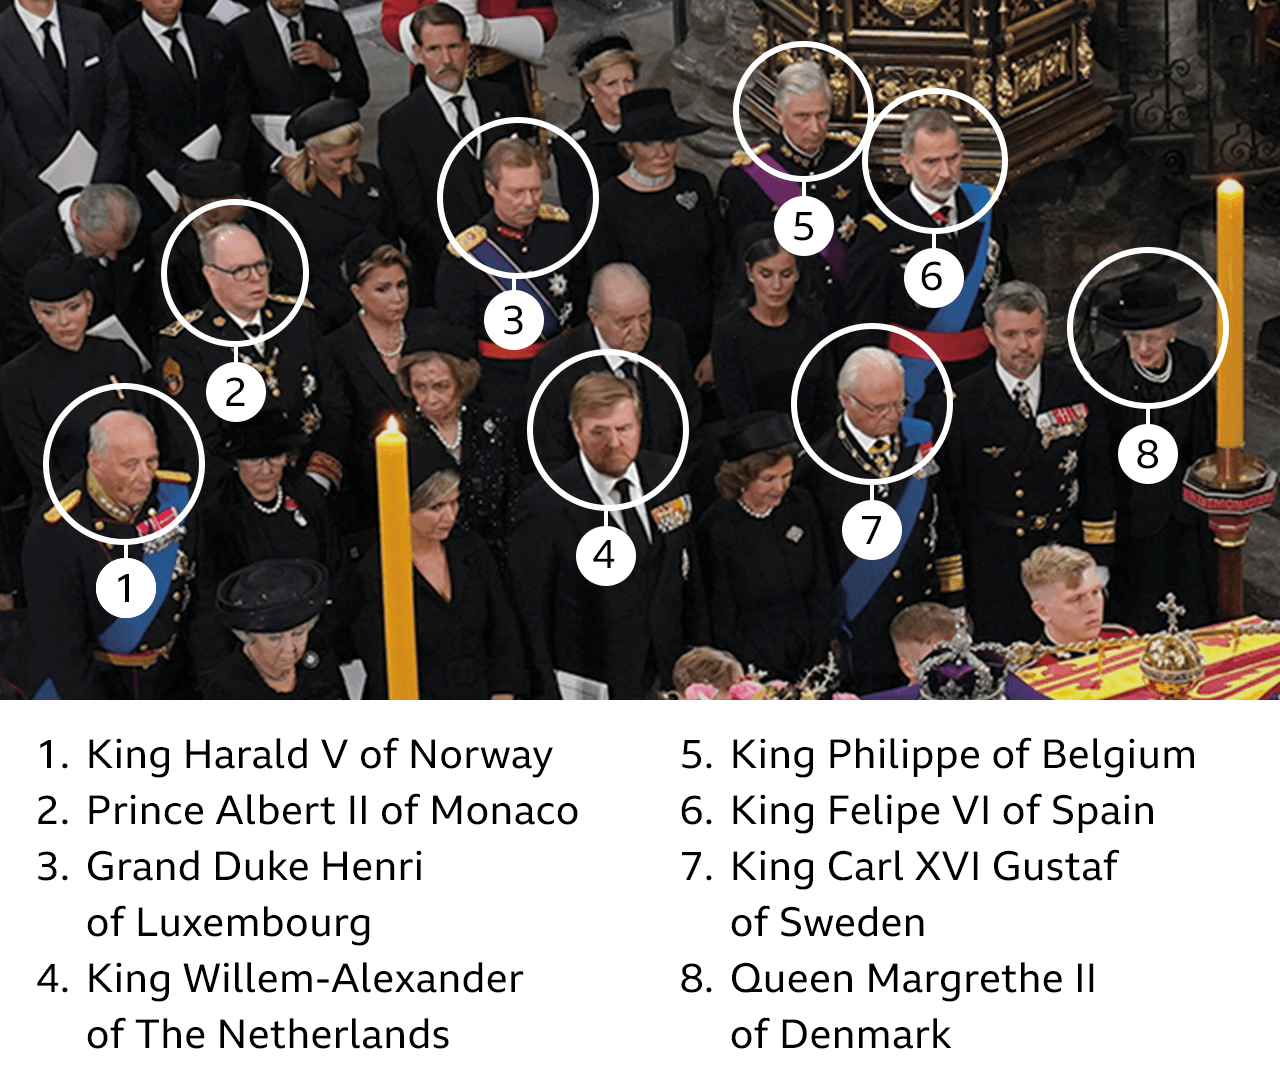 Rey Harald V de Noruega, Príncipe Alberto II de Mónaco, Gran Duque Enrique de Luxemburgo, Rey Willem-Alexander de Holanda, Rey Felipe de Bélgica, Rey Felipe VI de España, Rey Carlos XVI Gustaf de Suecia, Reina Margarita II de Dinamarca